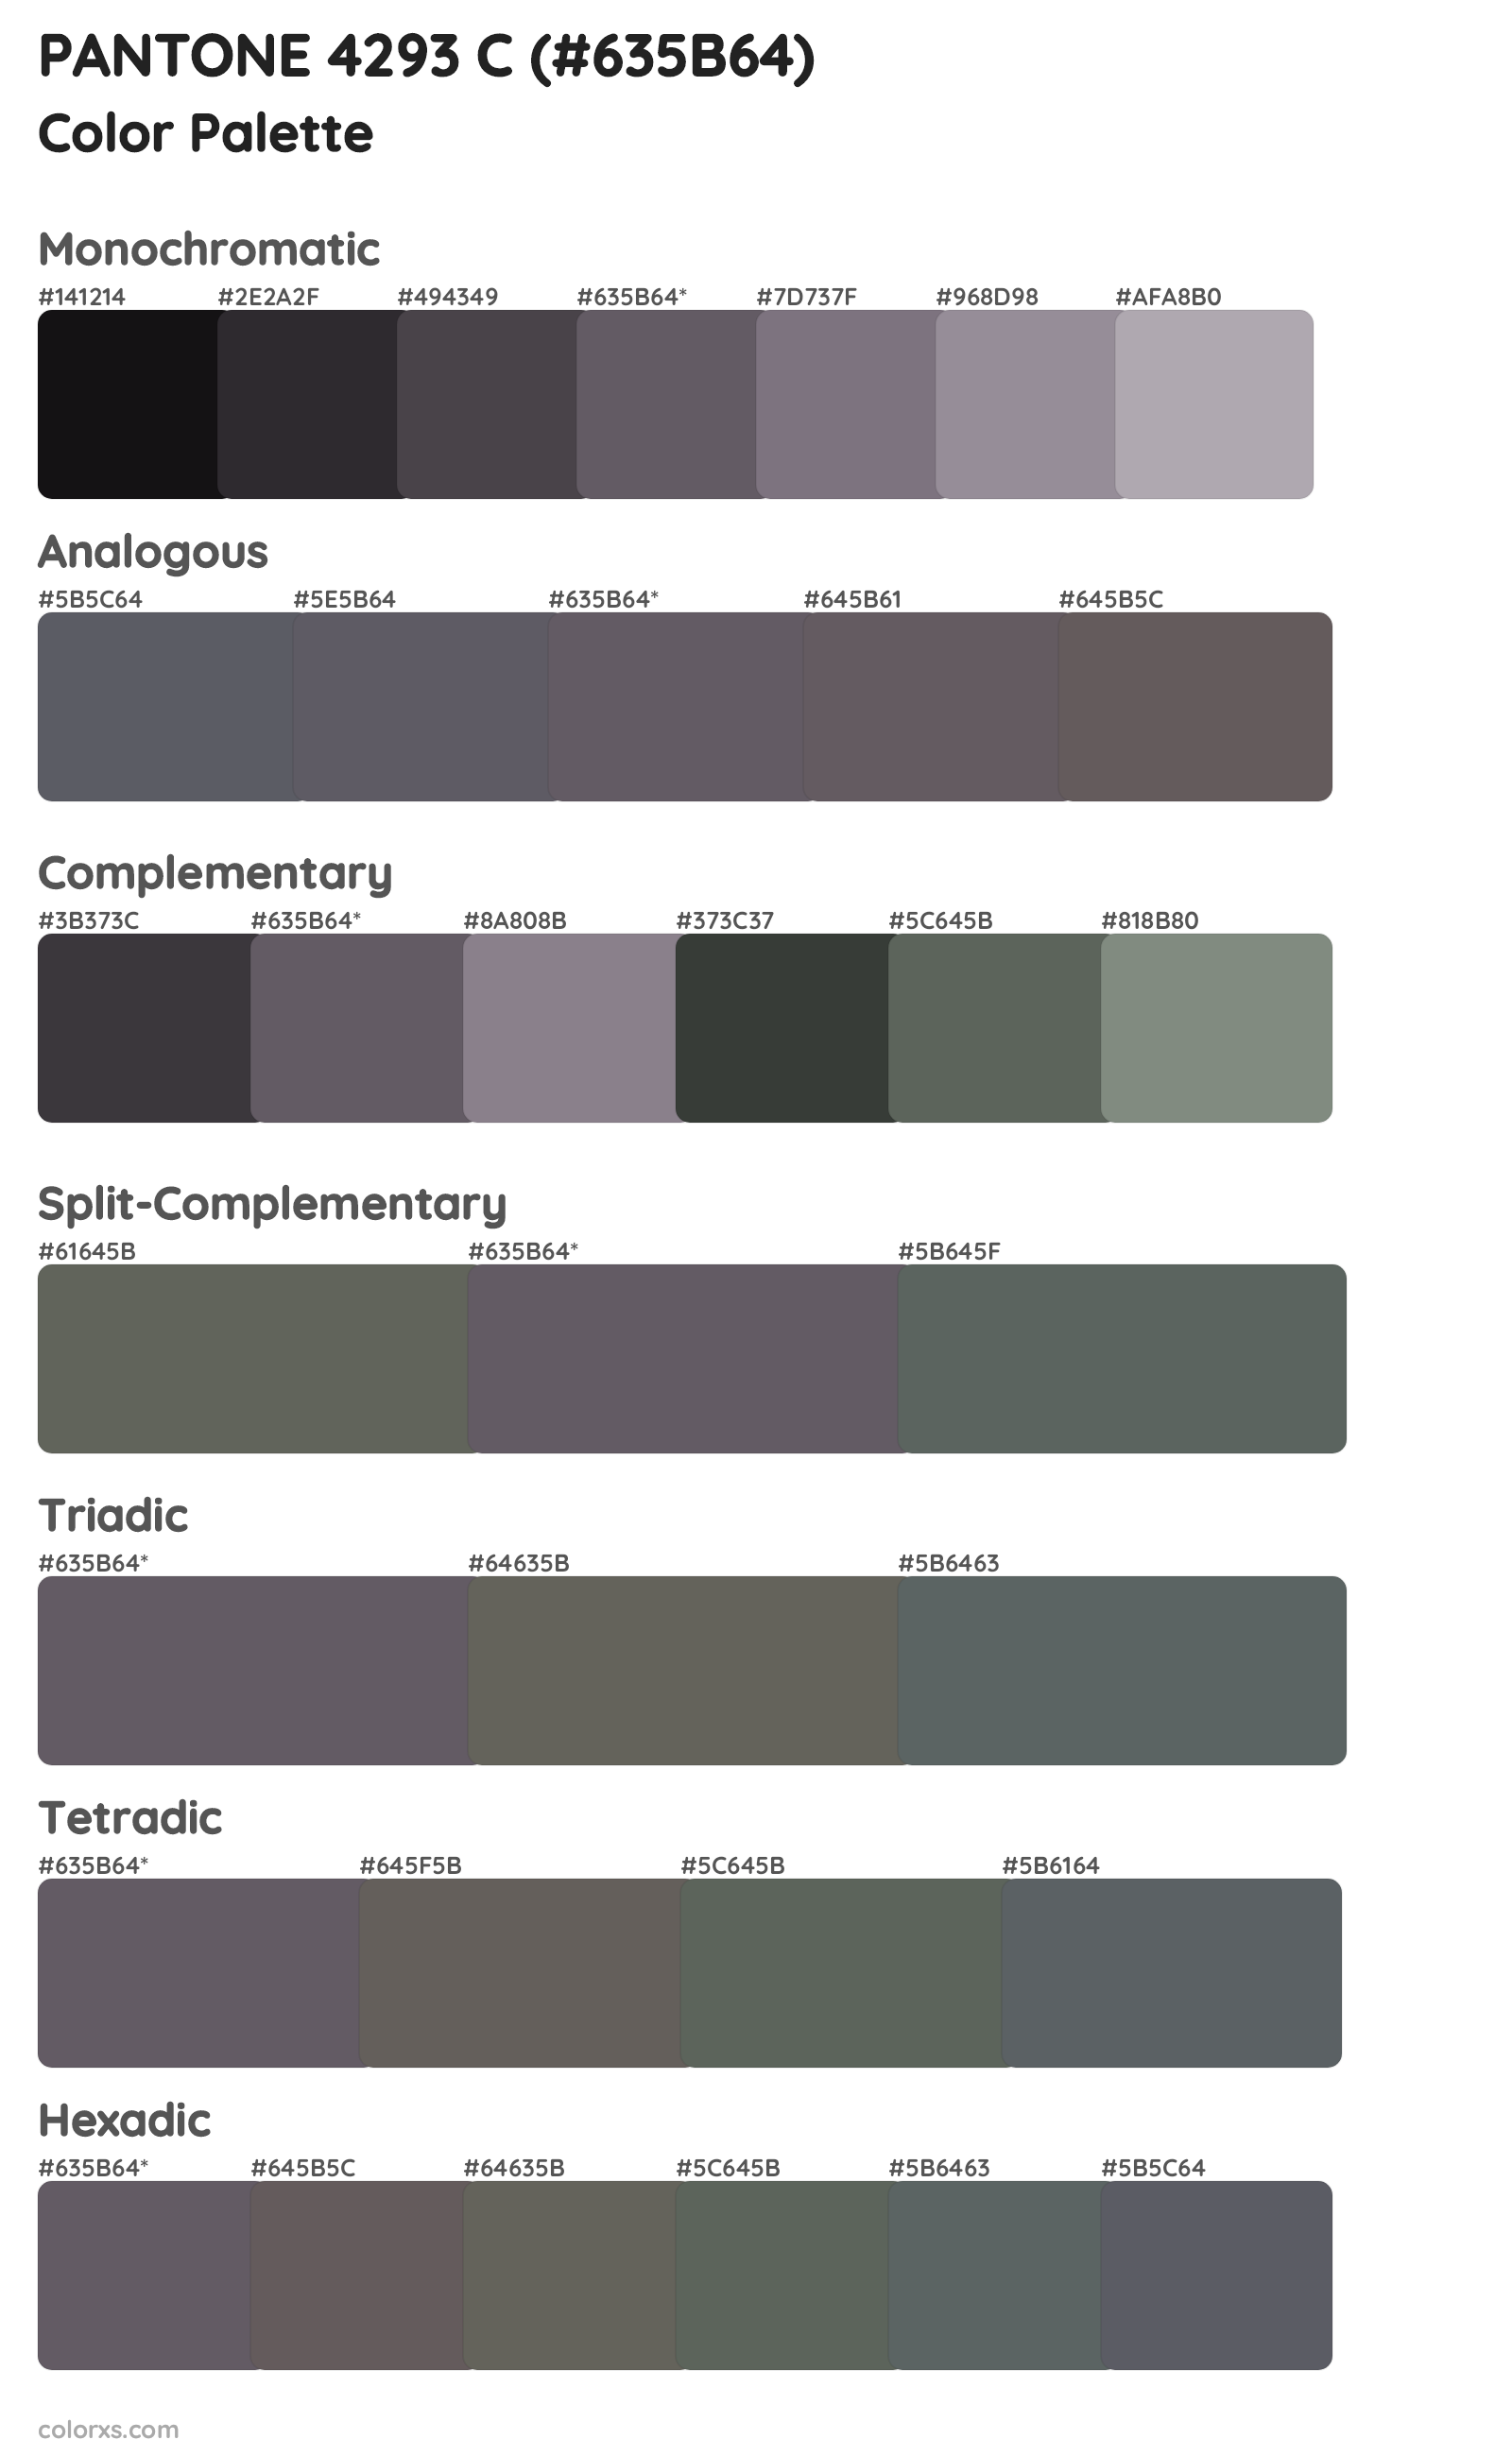 PANTONE 4293 C Color Scheme Palettes